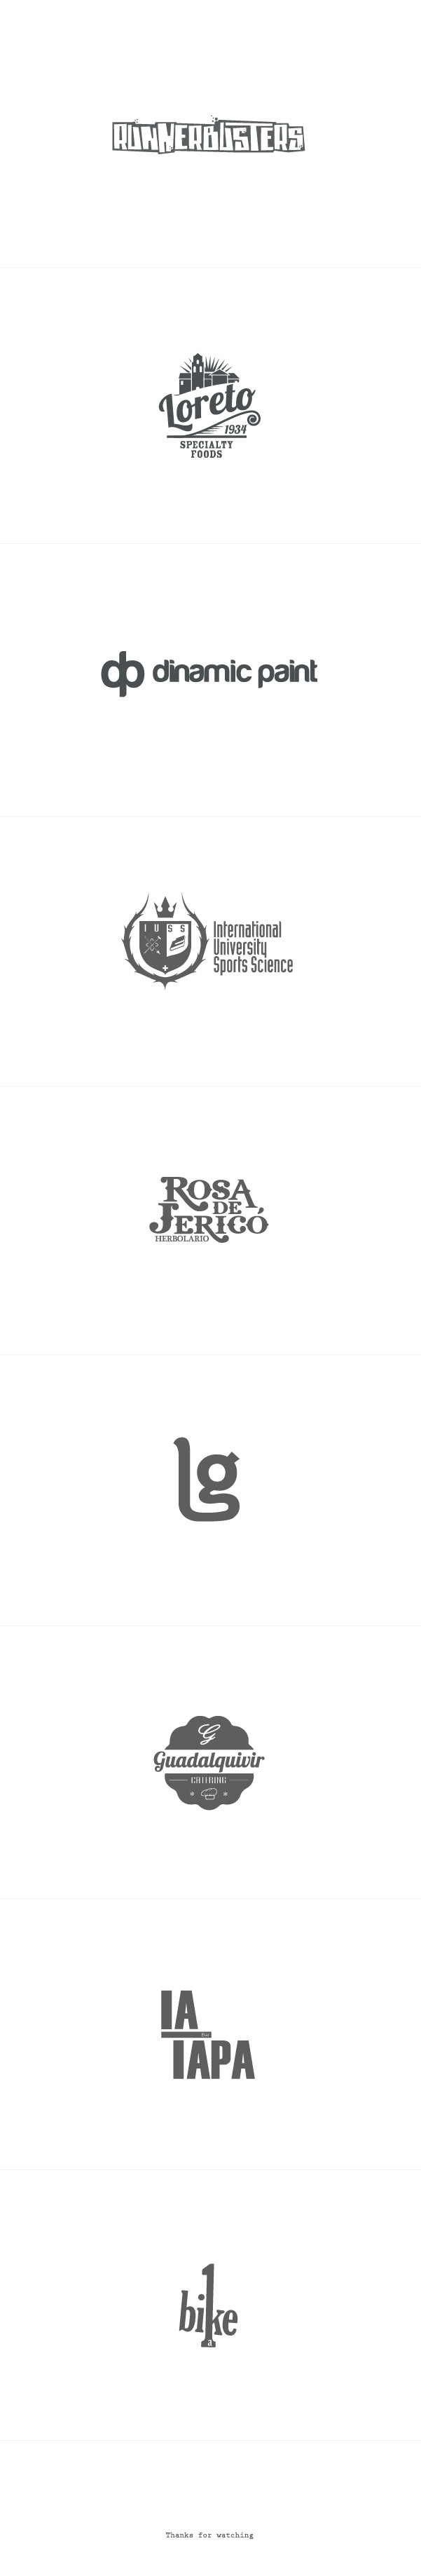 logos logotypes Selection logo identity Icon design brand